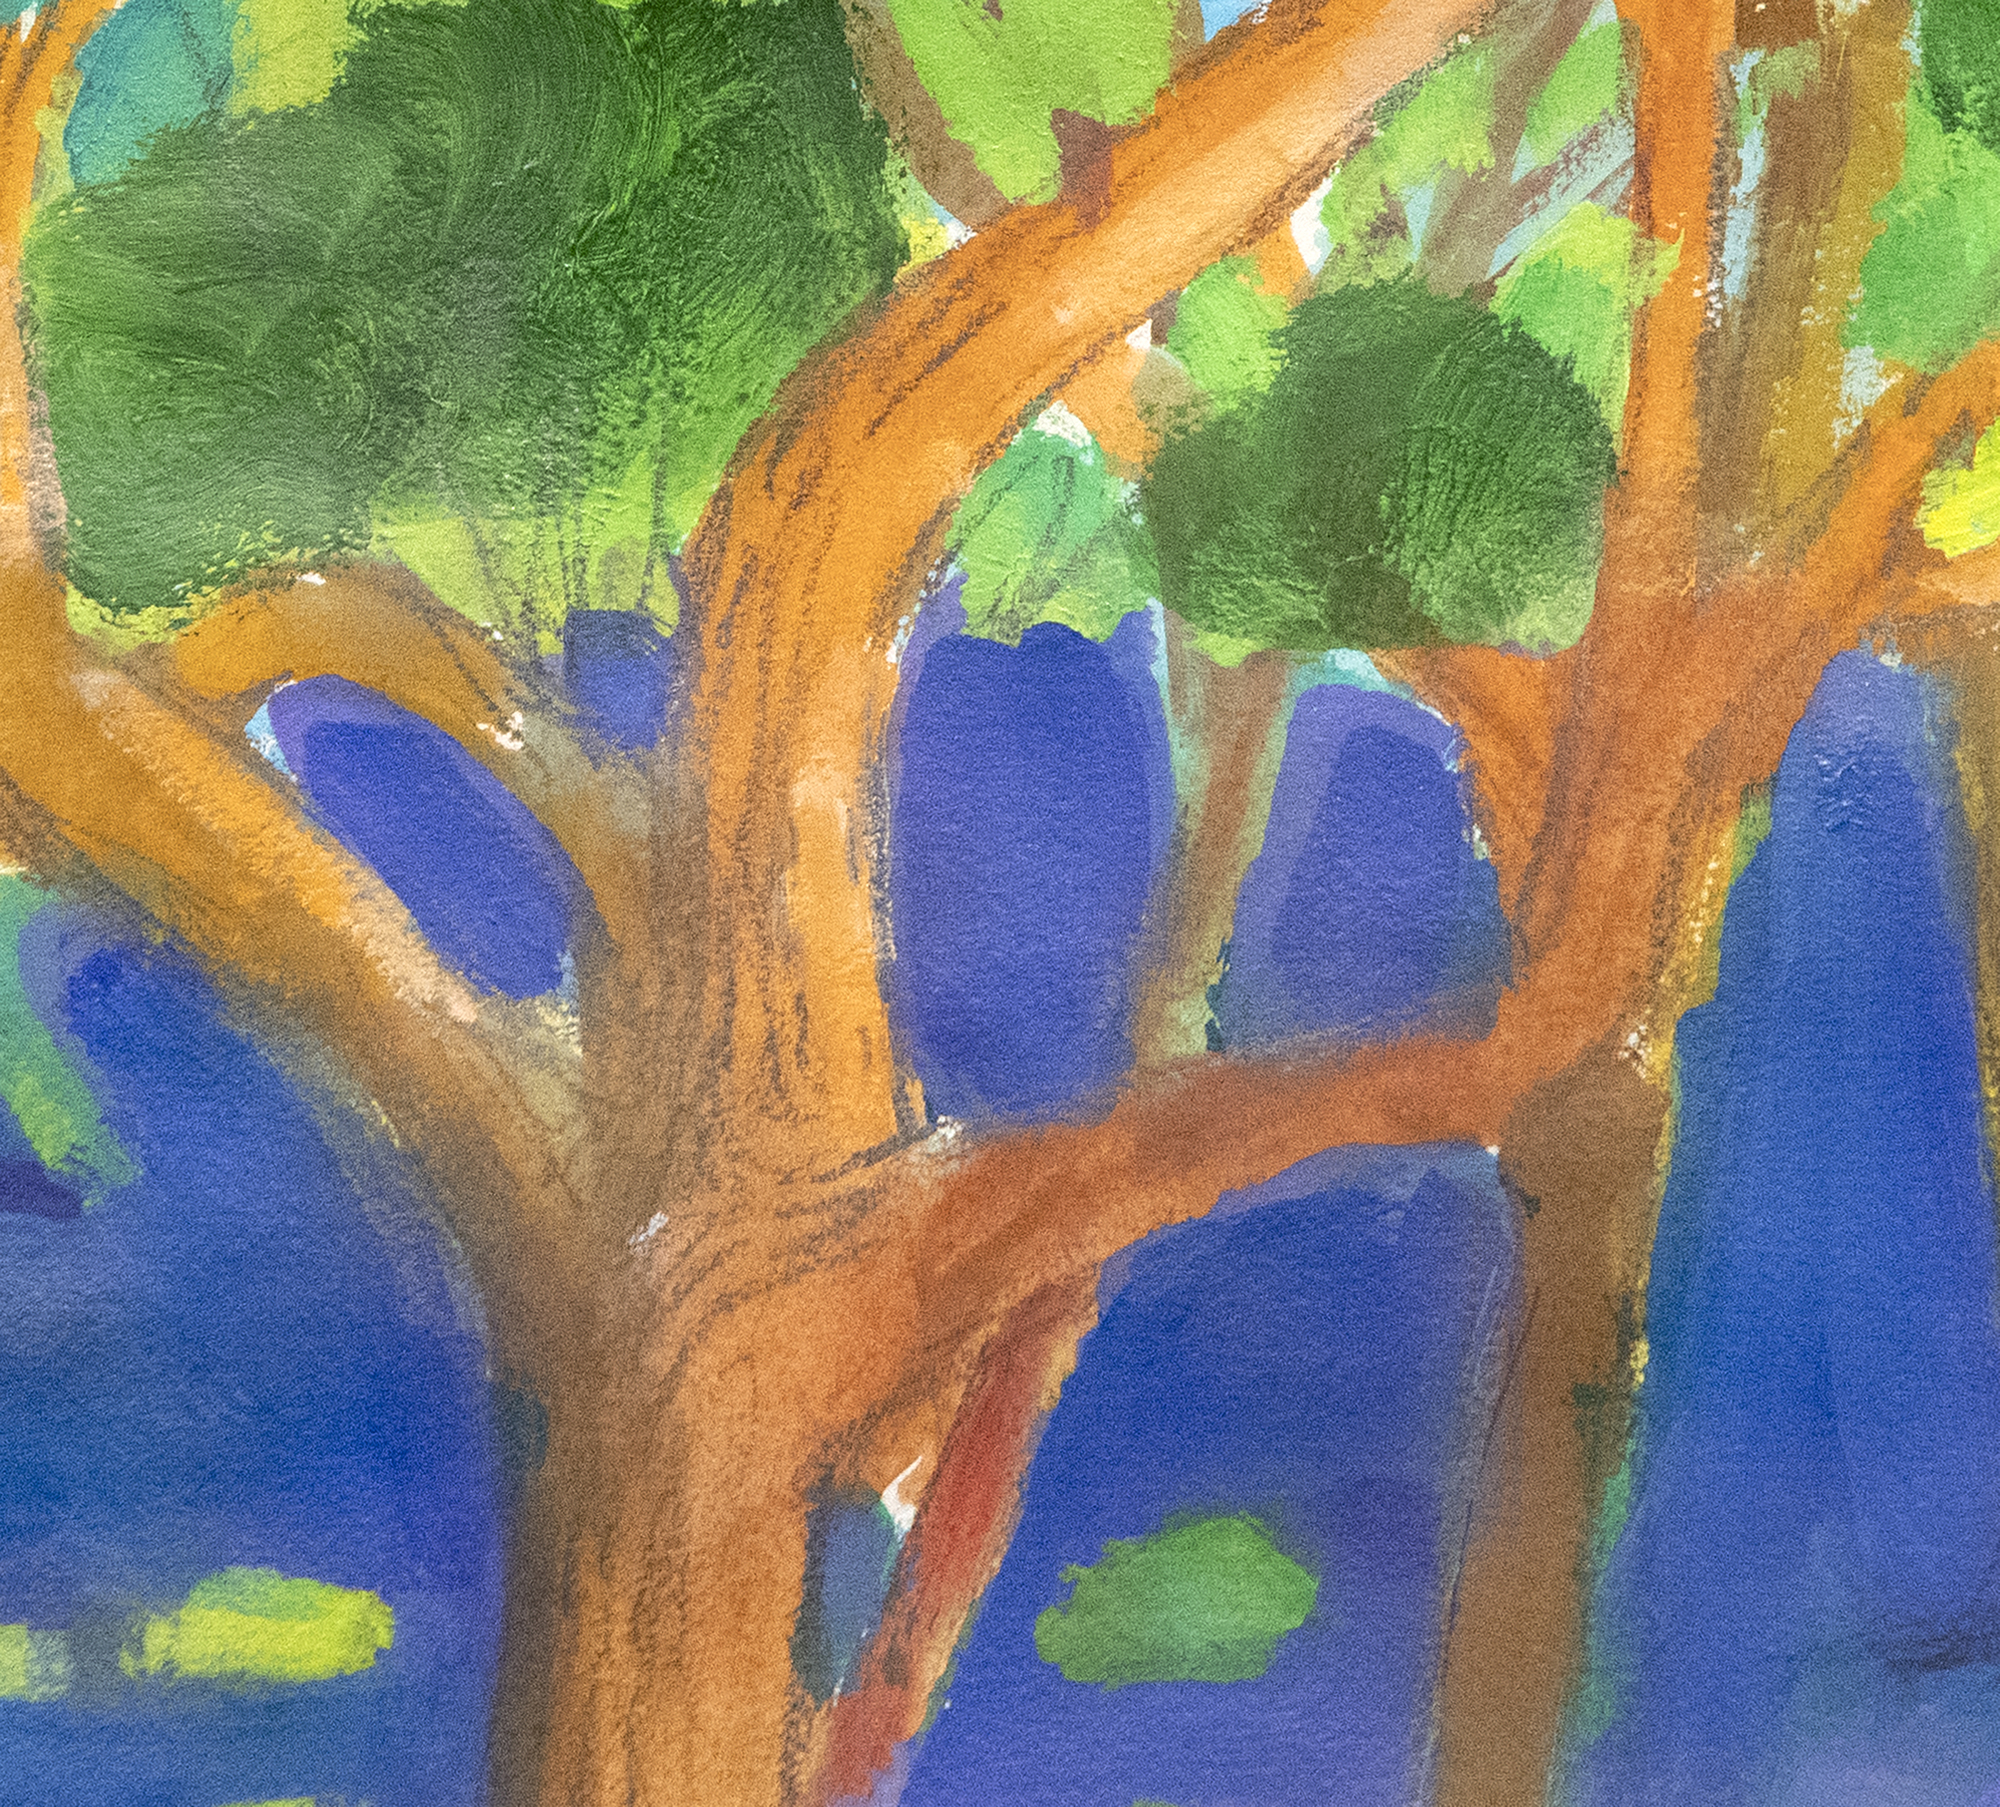 פול וונר - פארק עם דמויות סביב עץ - אקריליק ועיפרון על נייר - 22 1/4 x 30 אינץ '.